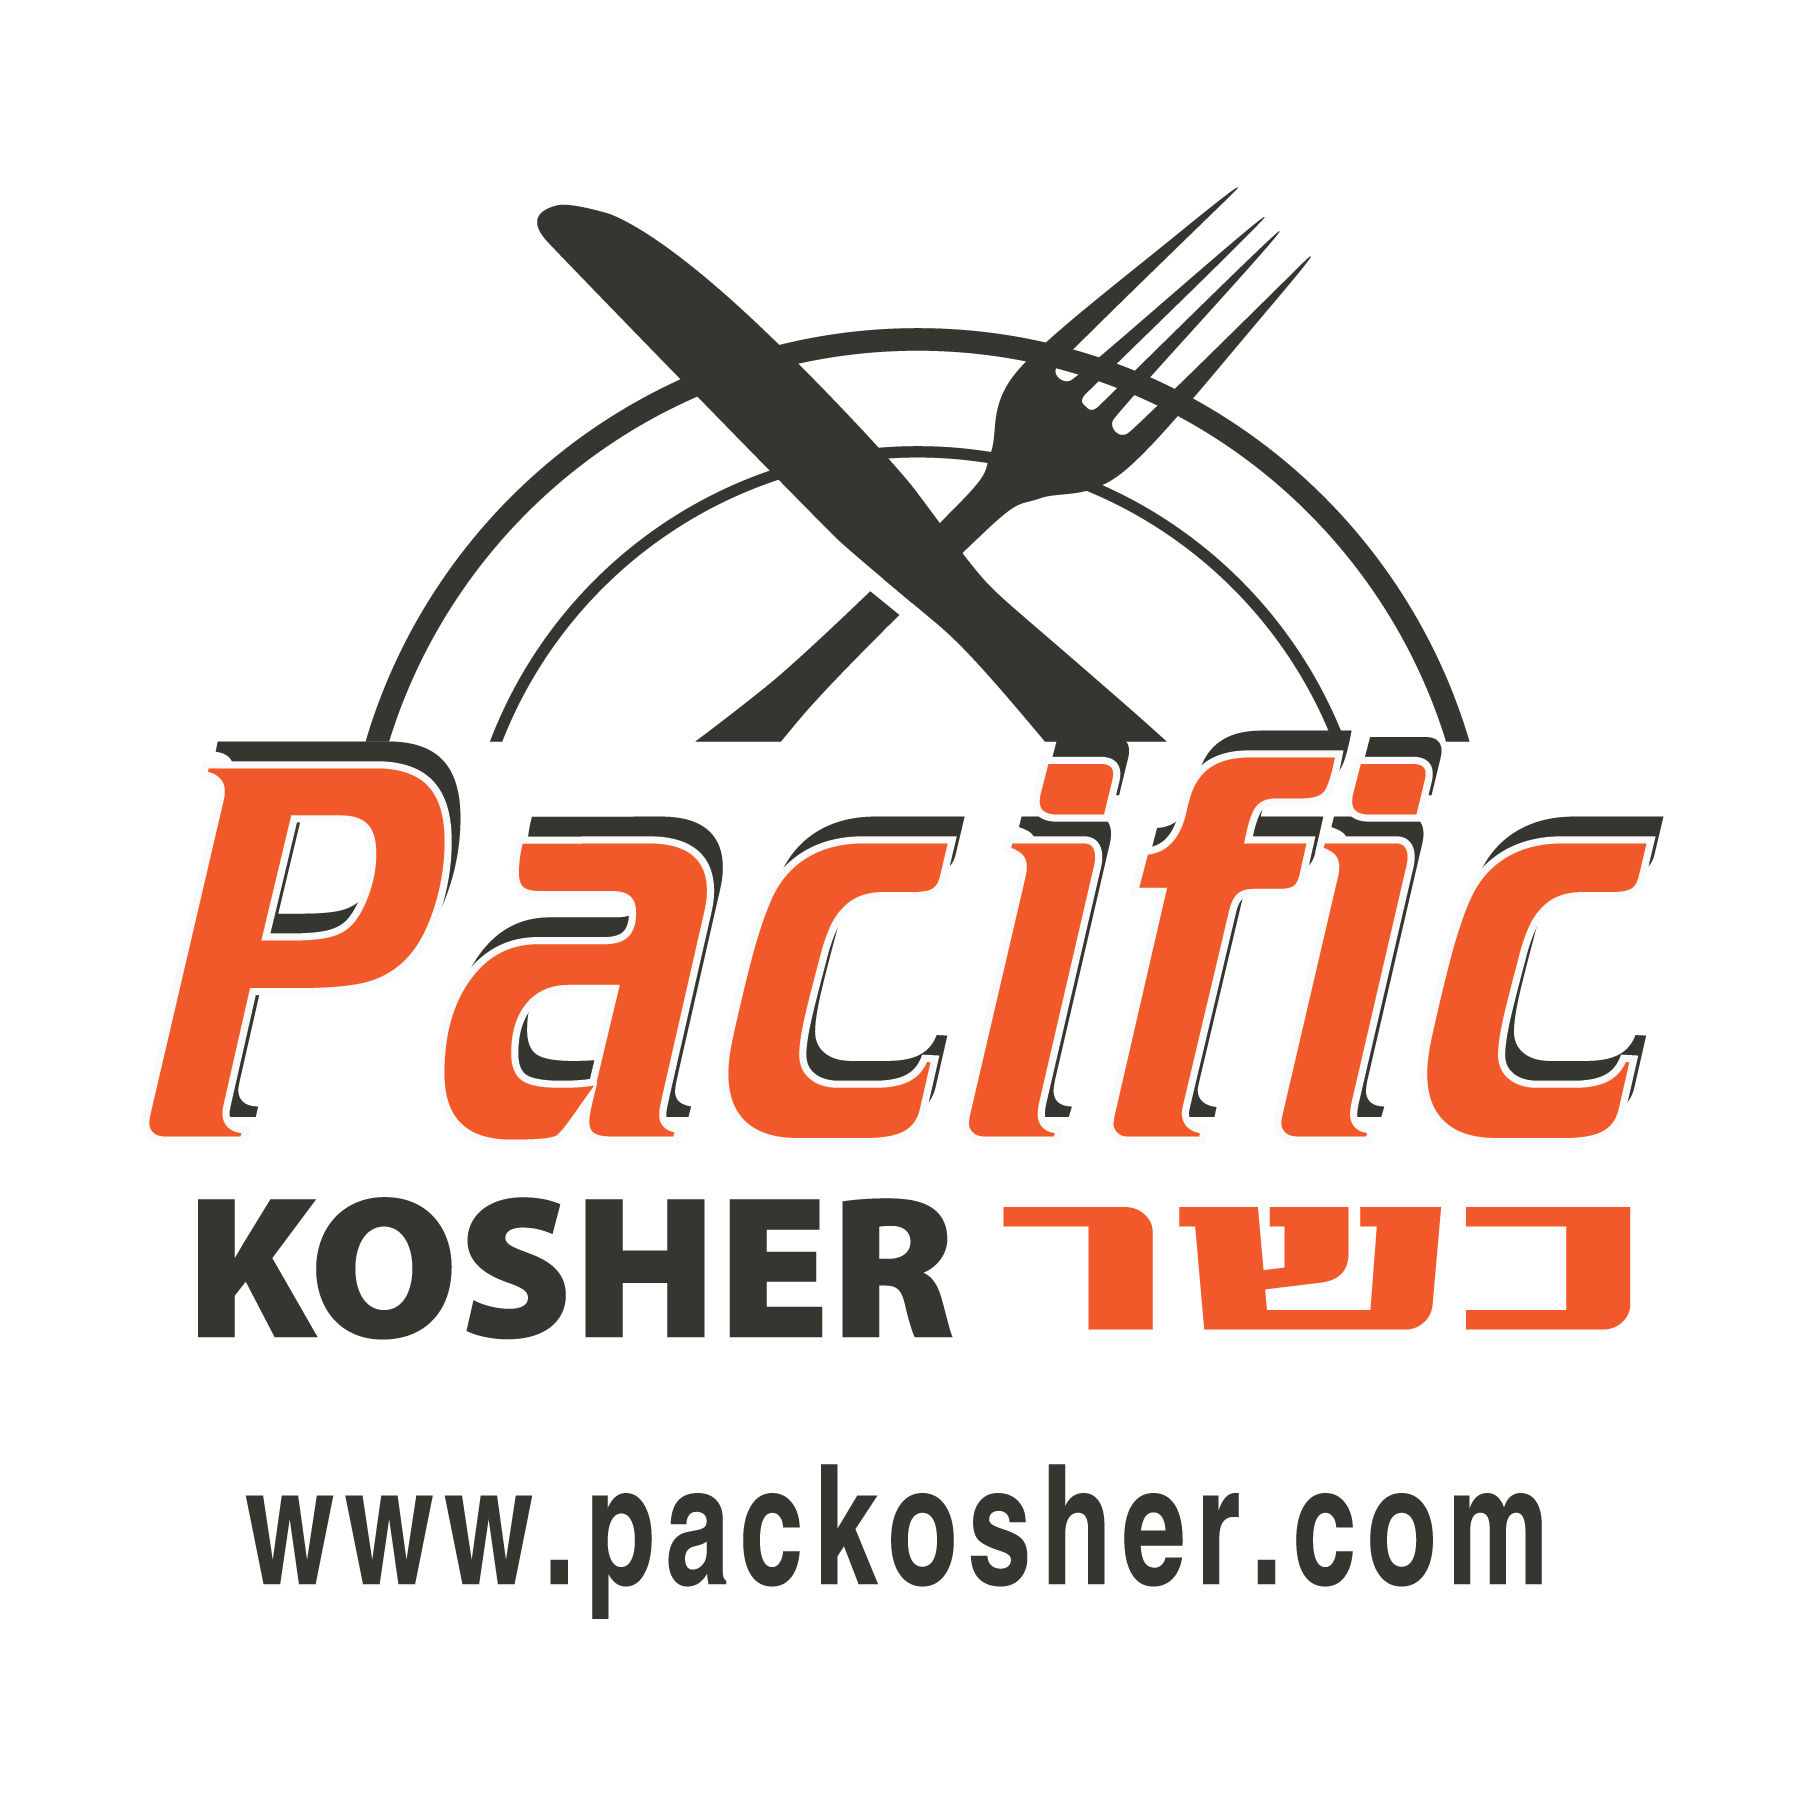 Pacific Kosher